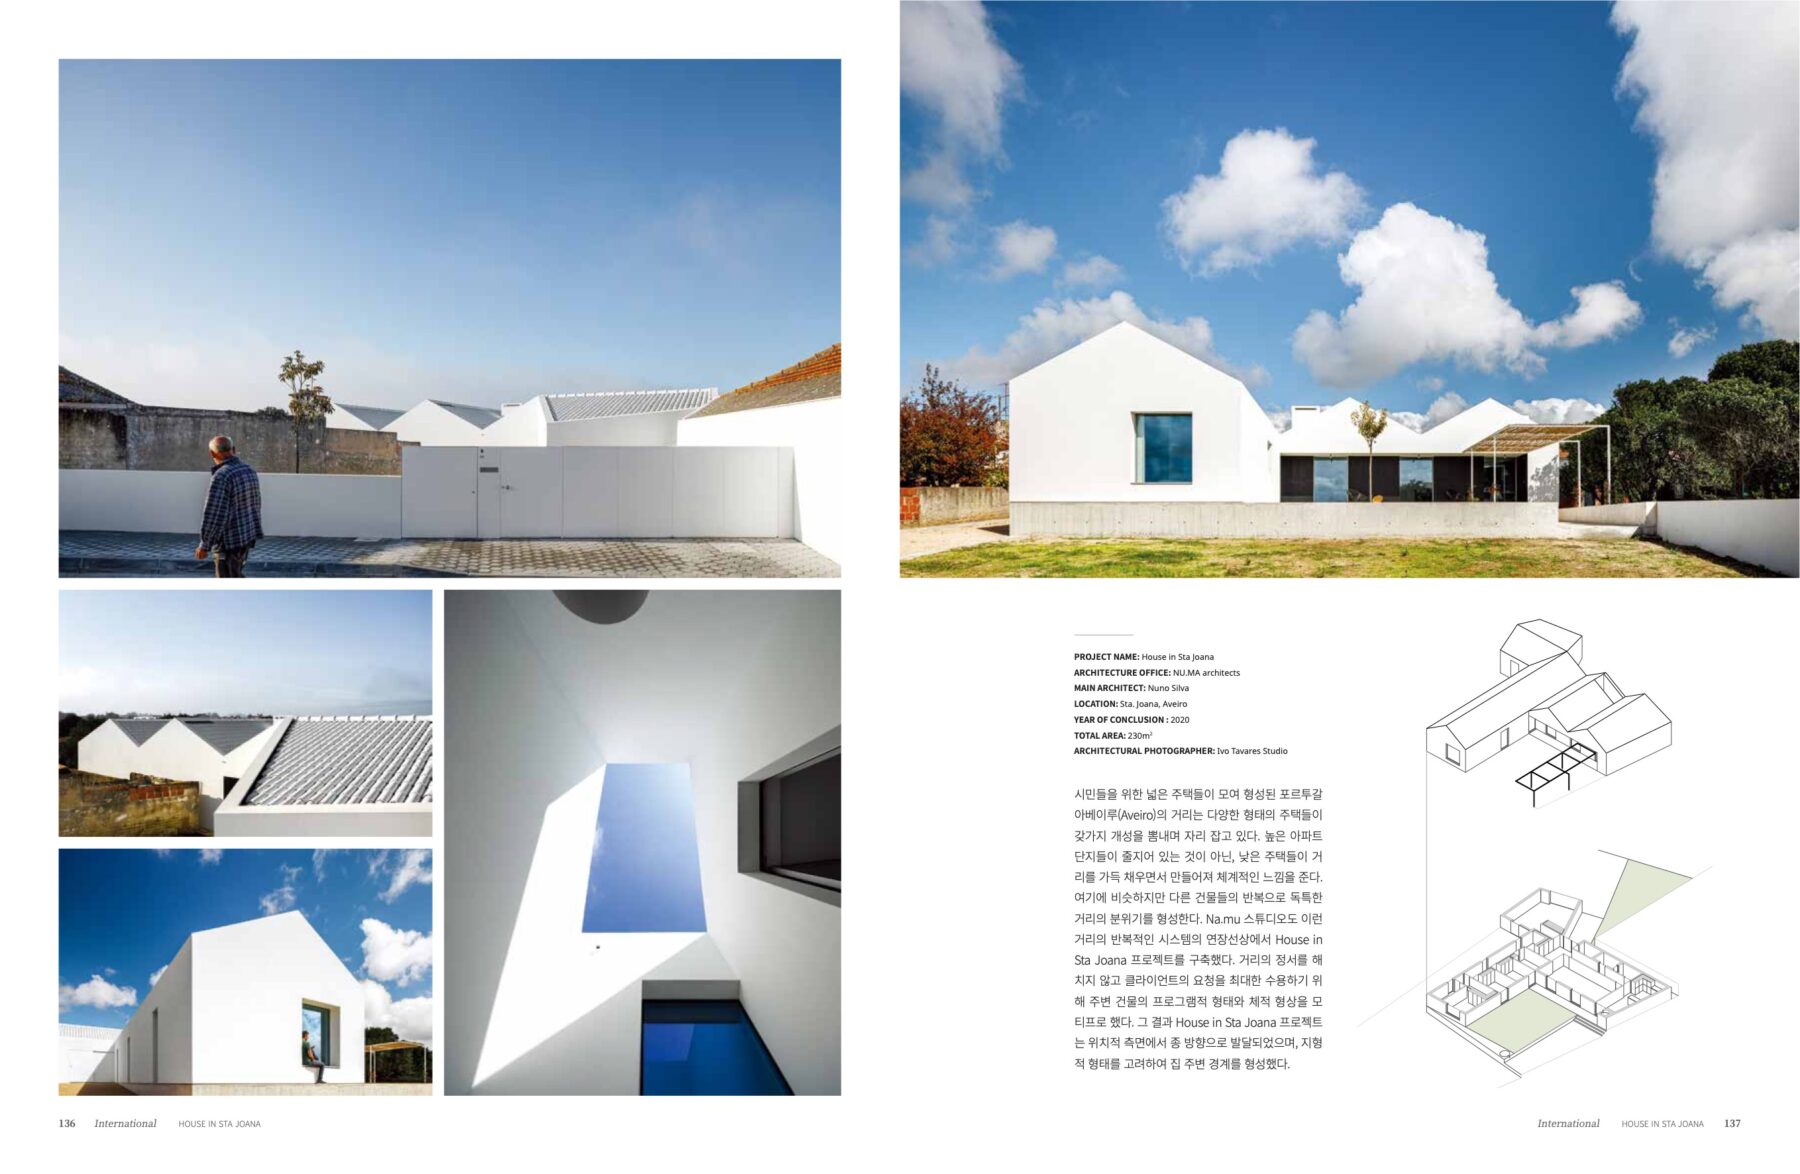 Deco Journal #321 do atelier Nu.ma com fotografia arquitetura de ivo tavares studio - architectural photography